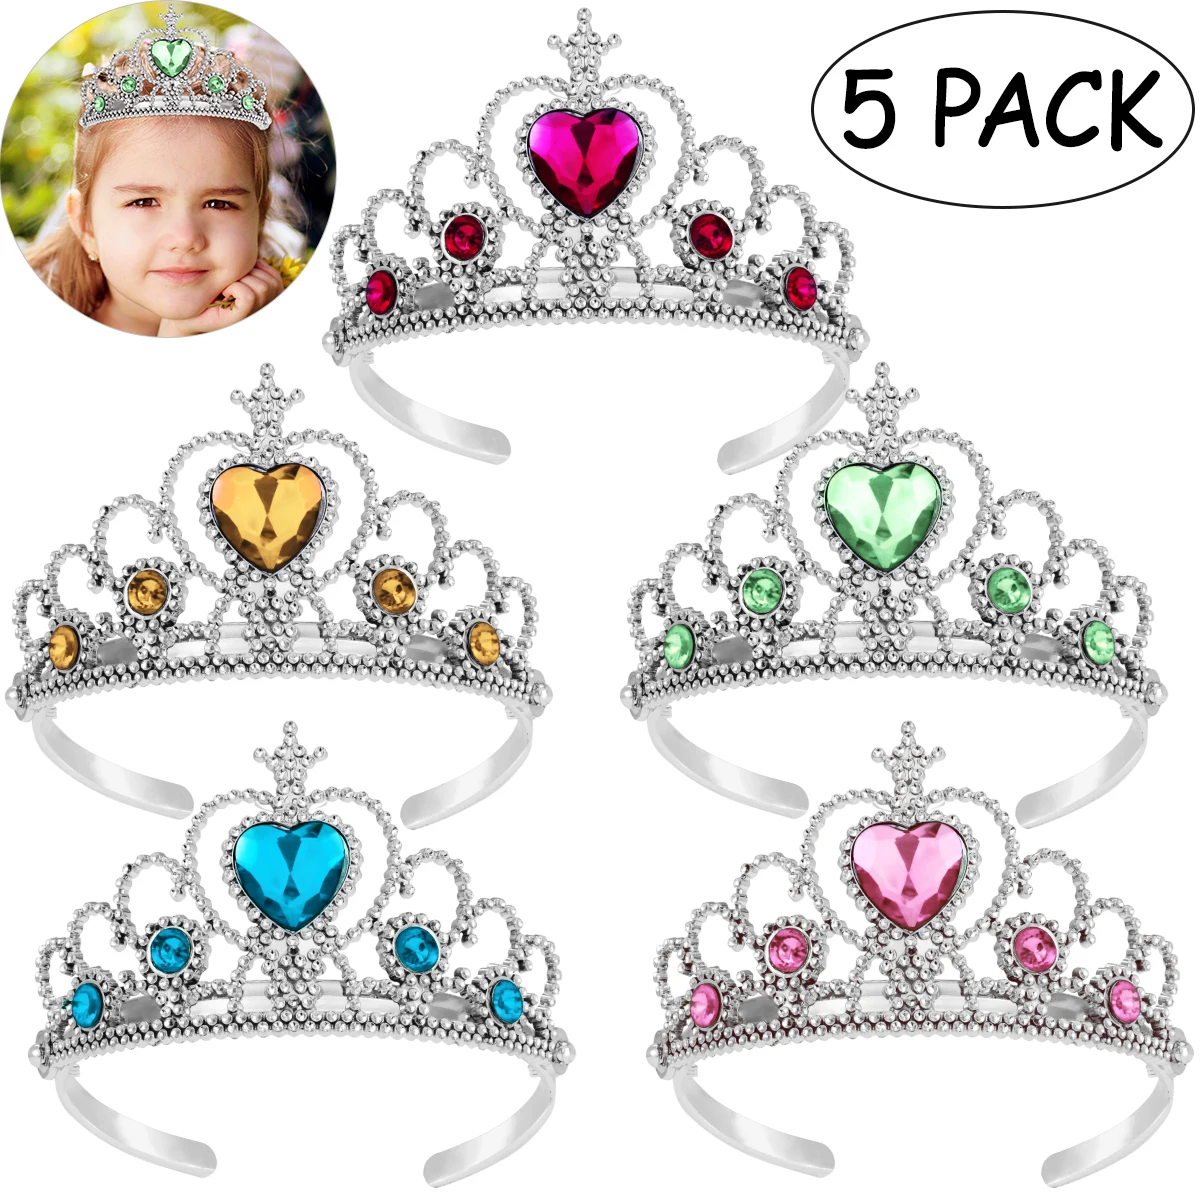 5db Aranyos gyerekek Tiara korona szett lányok öltöztetős parti fejpánt kiegészítők királynő hercegnő fejdísz ünnepi gyermek fejfedő